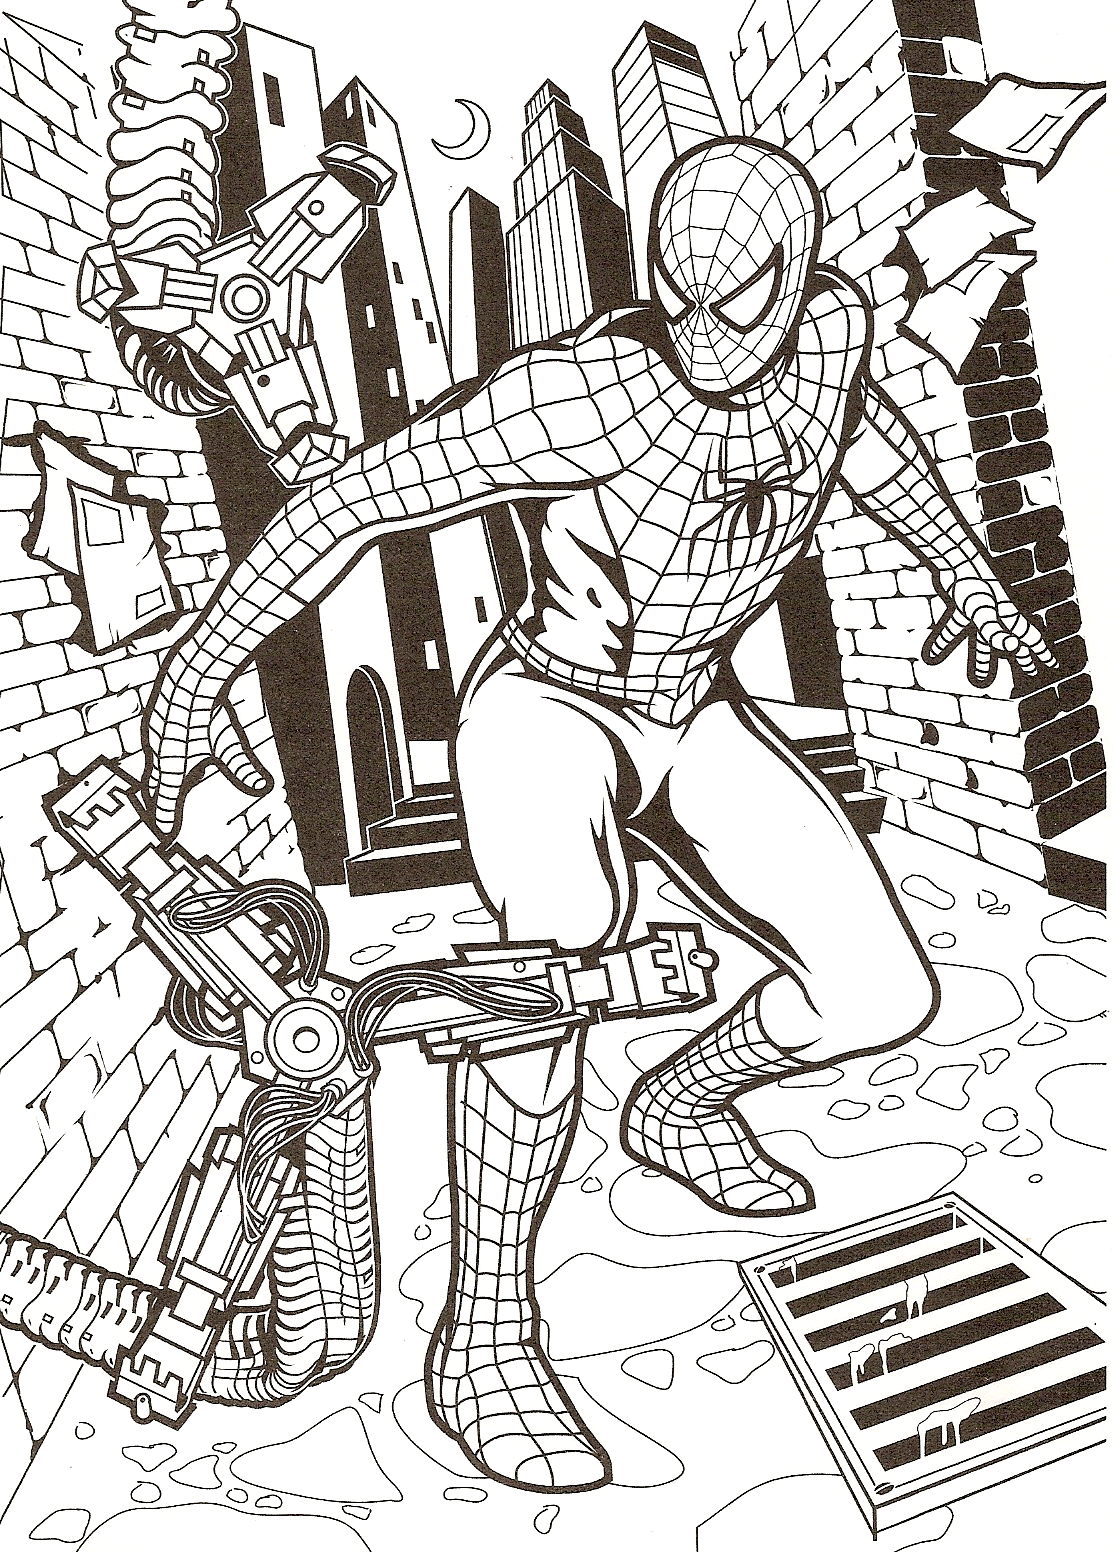 Spiderman dans la rue près à donner une correction à un méchant !